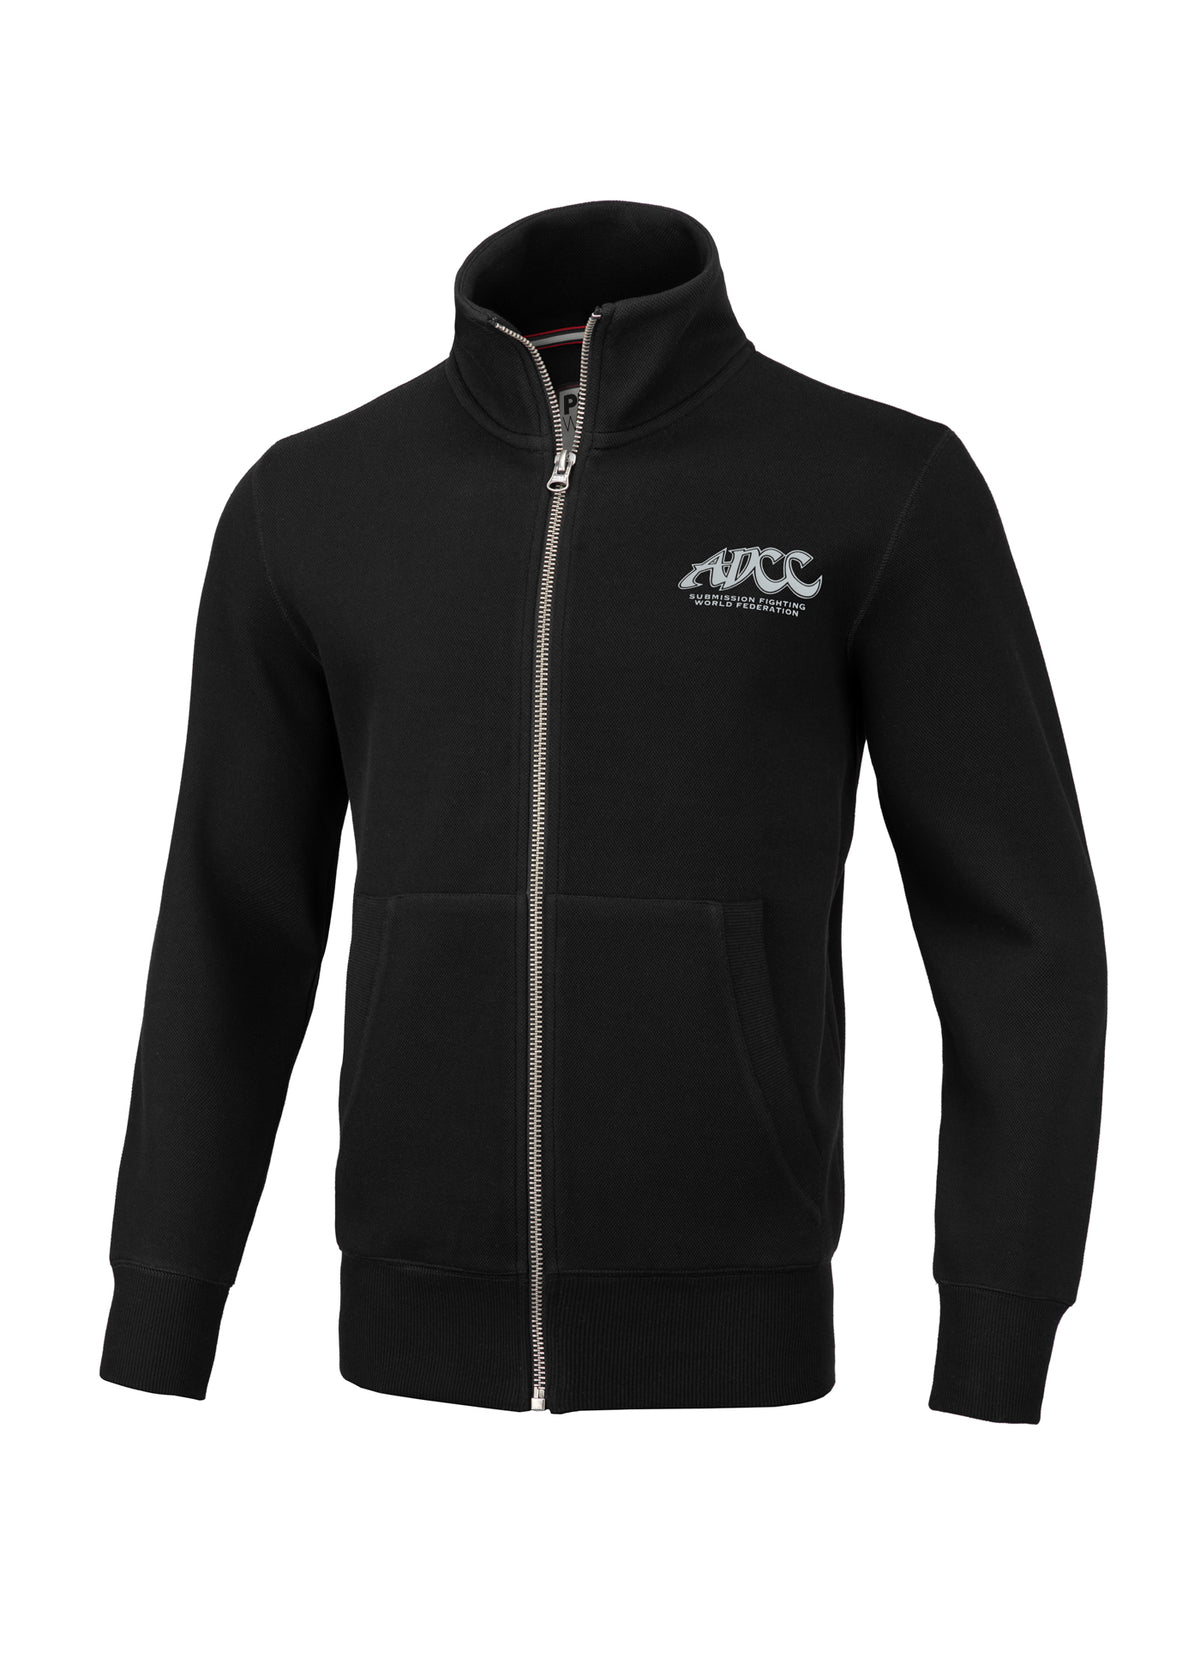 ADCC Premium Pique Black Sweatjacket.